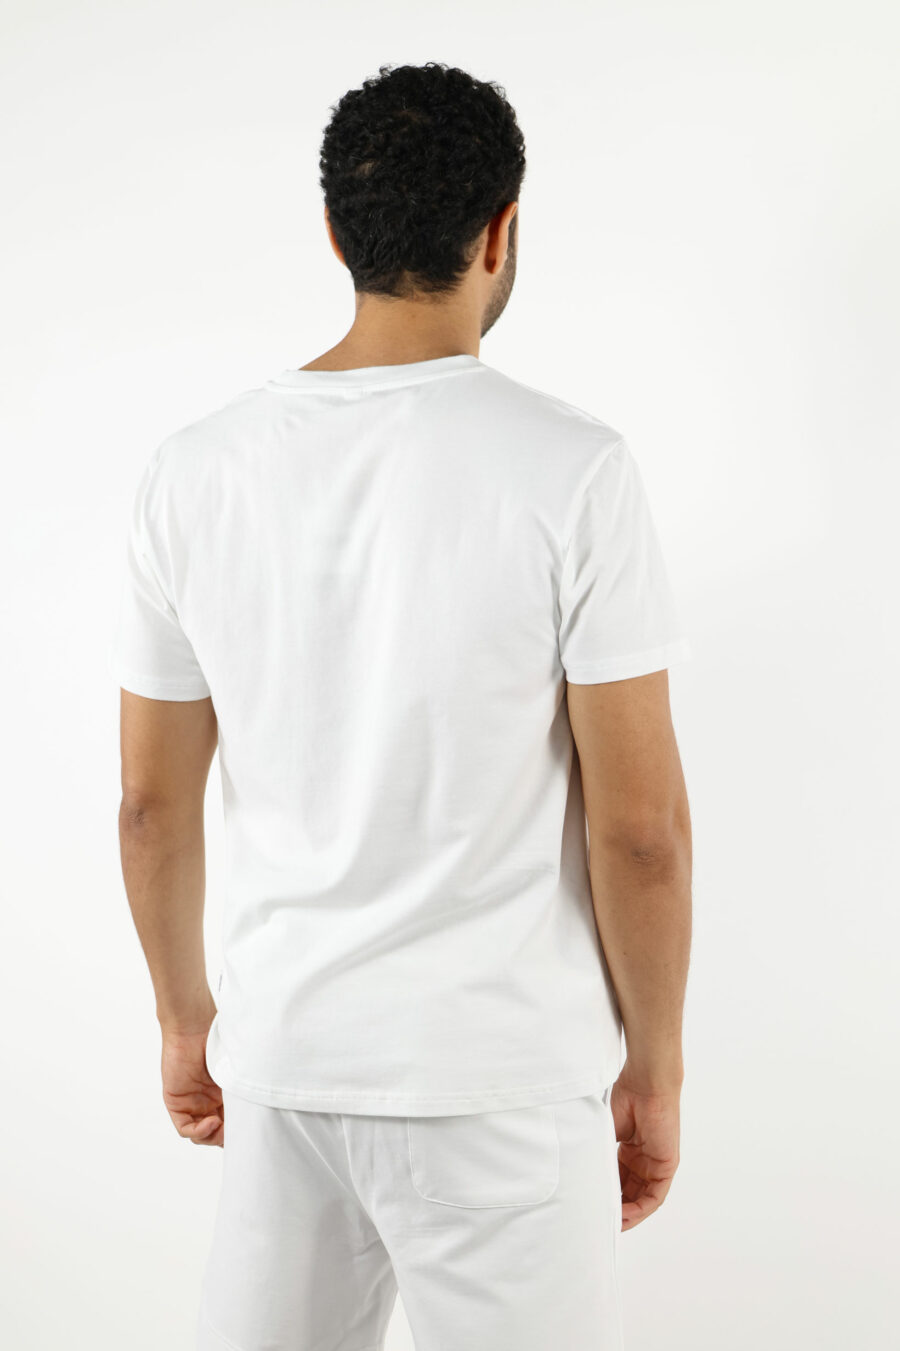 T-shirt blanc avec mini-logo ours "underbear" en caoutchouc noir - 111032